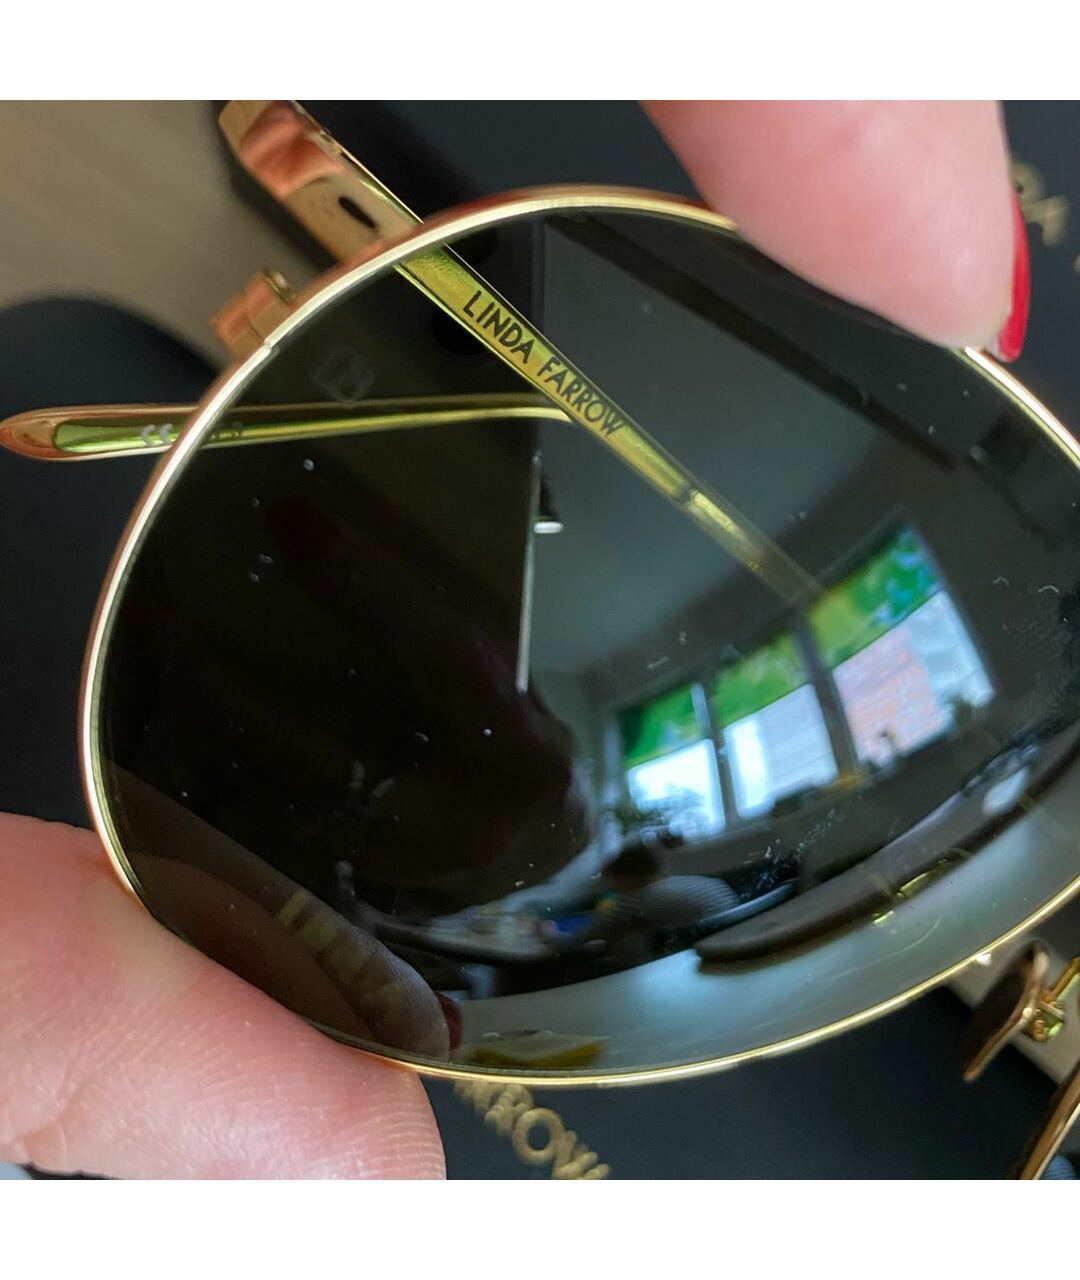 LINDA FARROW Золотые металлические солнцезащитные очки, фото 5